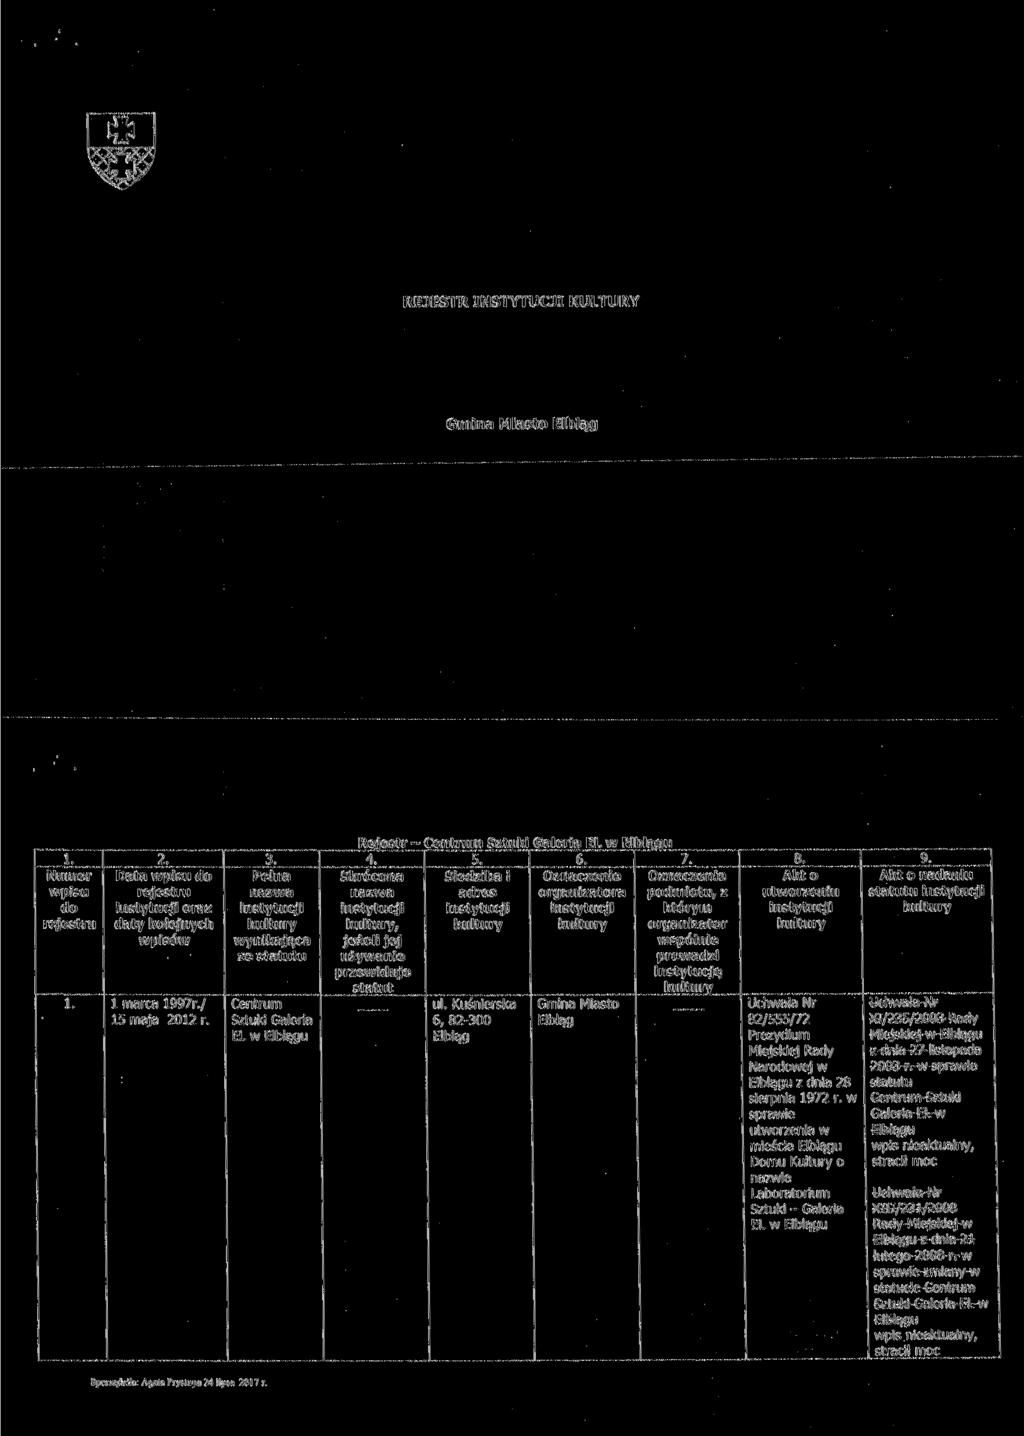 REJESTR INSTYTUCJI KULTURY Data oraz 1 marca 1997r./ 15 maja 2012 r.